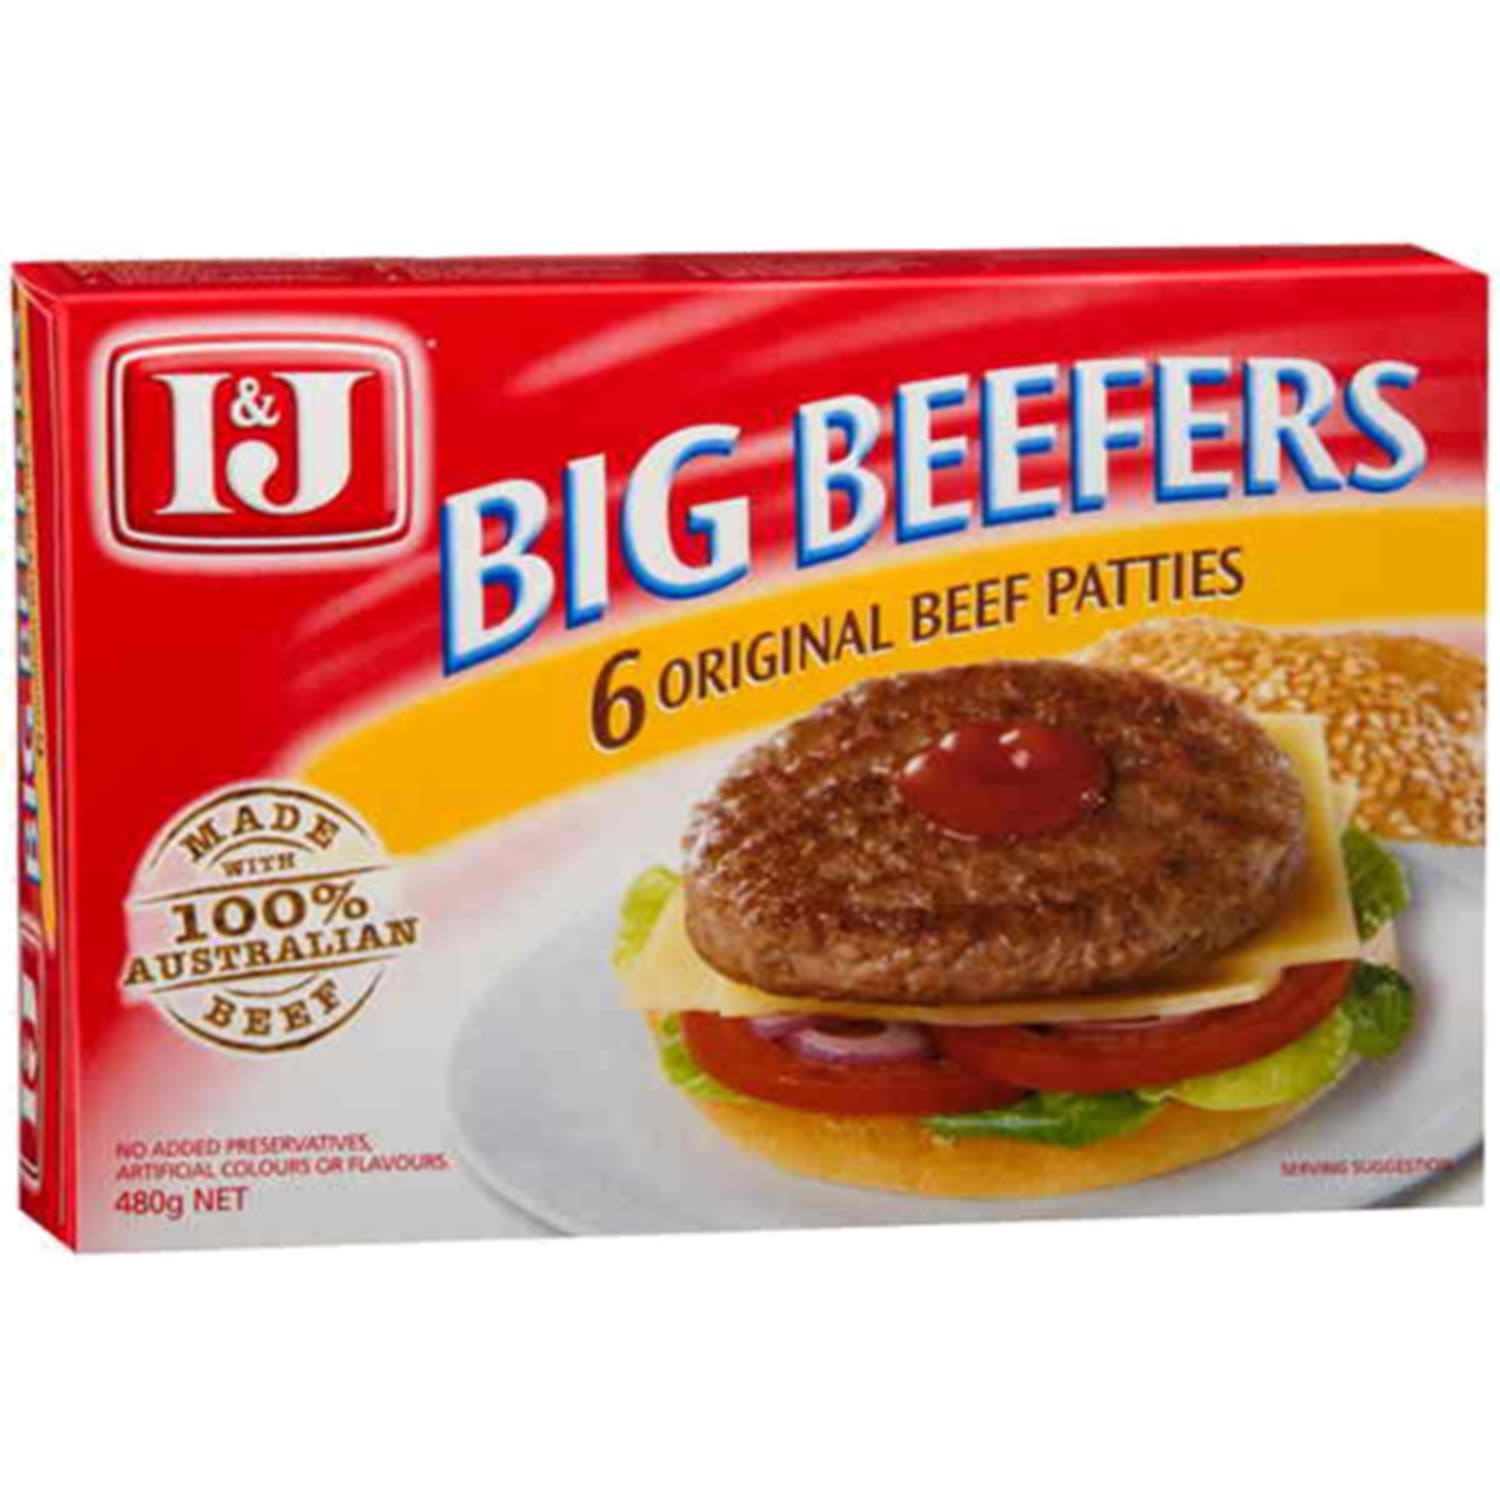 I&J Big Beefers Original Beef Patties 6 Pack 480g